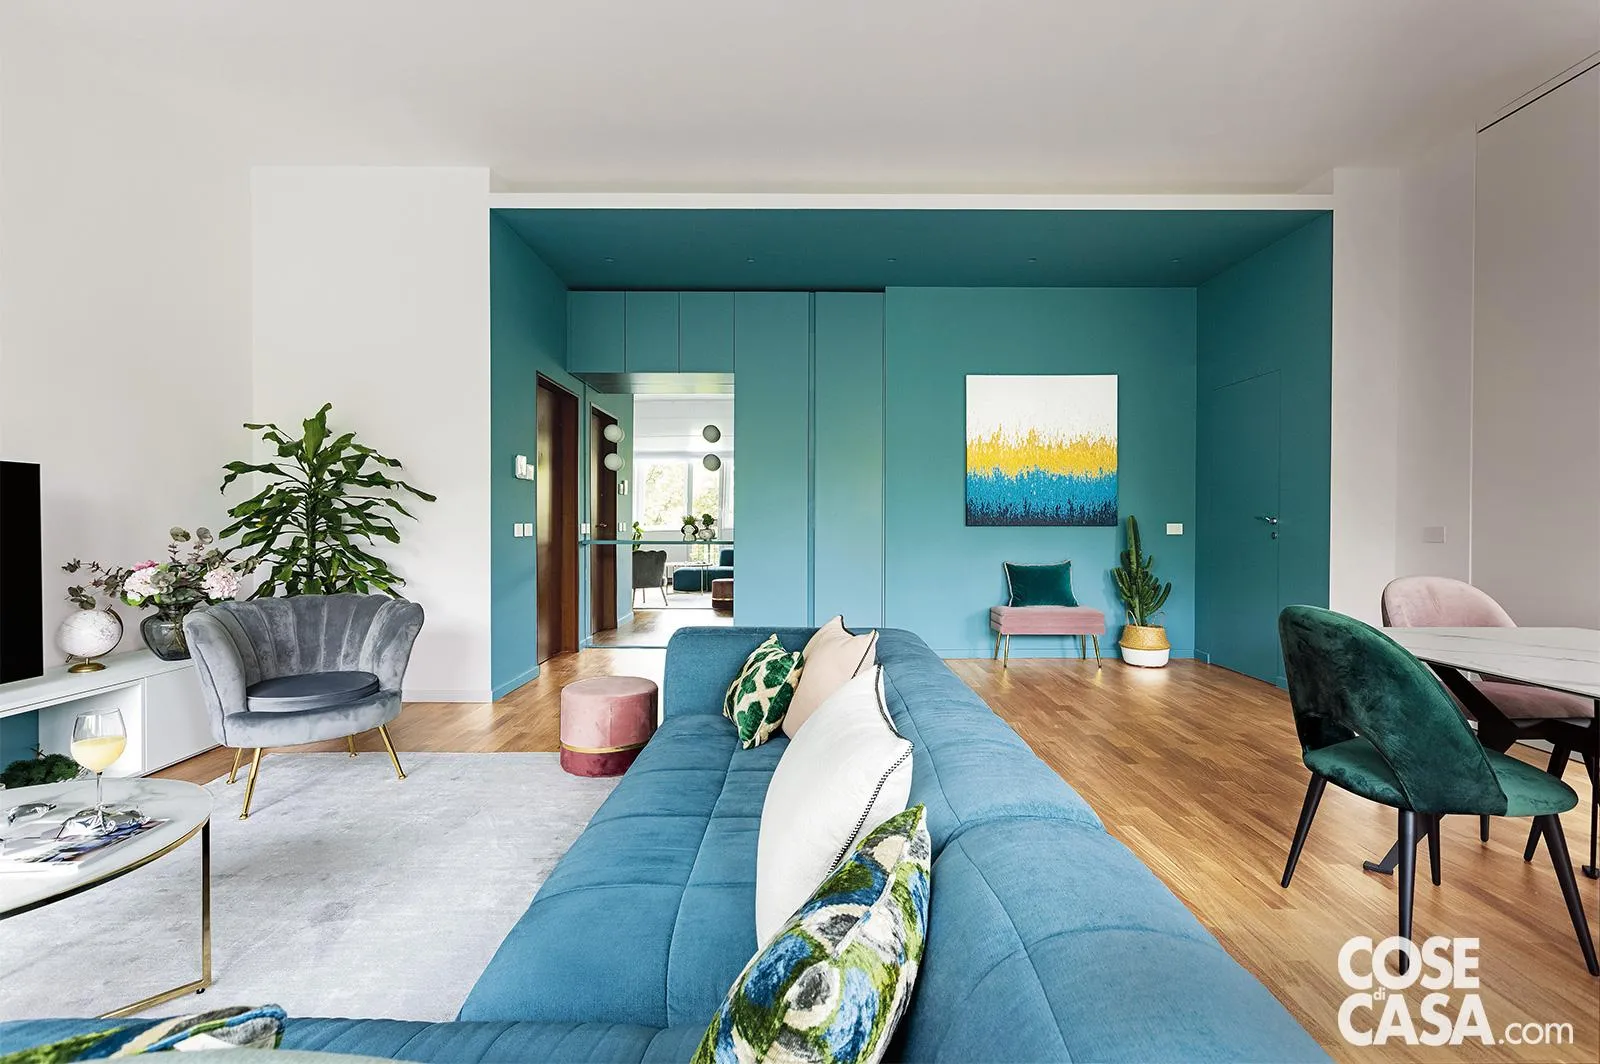 parete-azzurra-arredamento-per-cucina-muratura-bianca-ante-pensili-legno-pavimento-chiaro